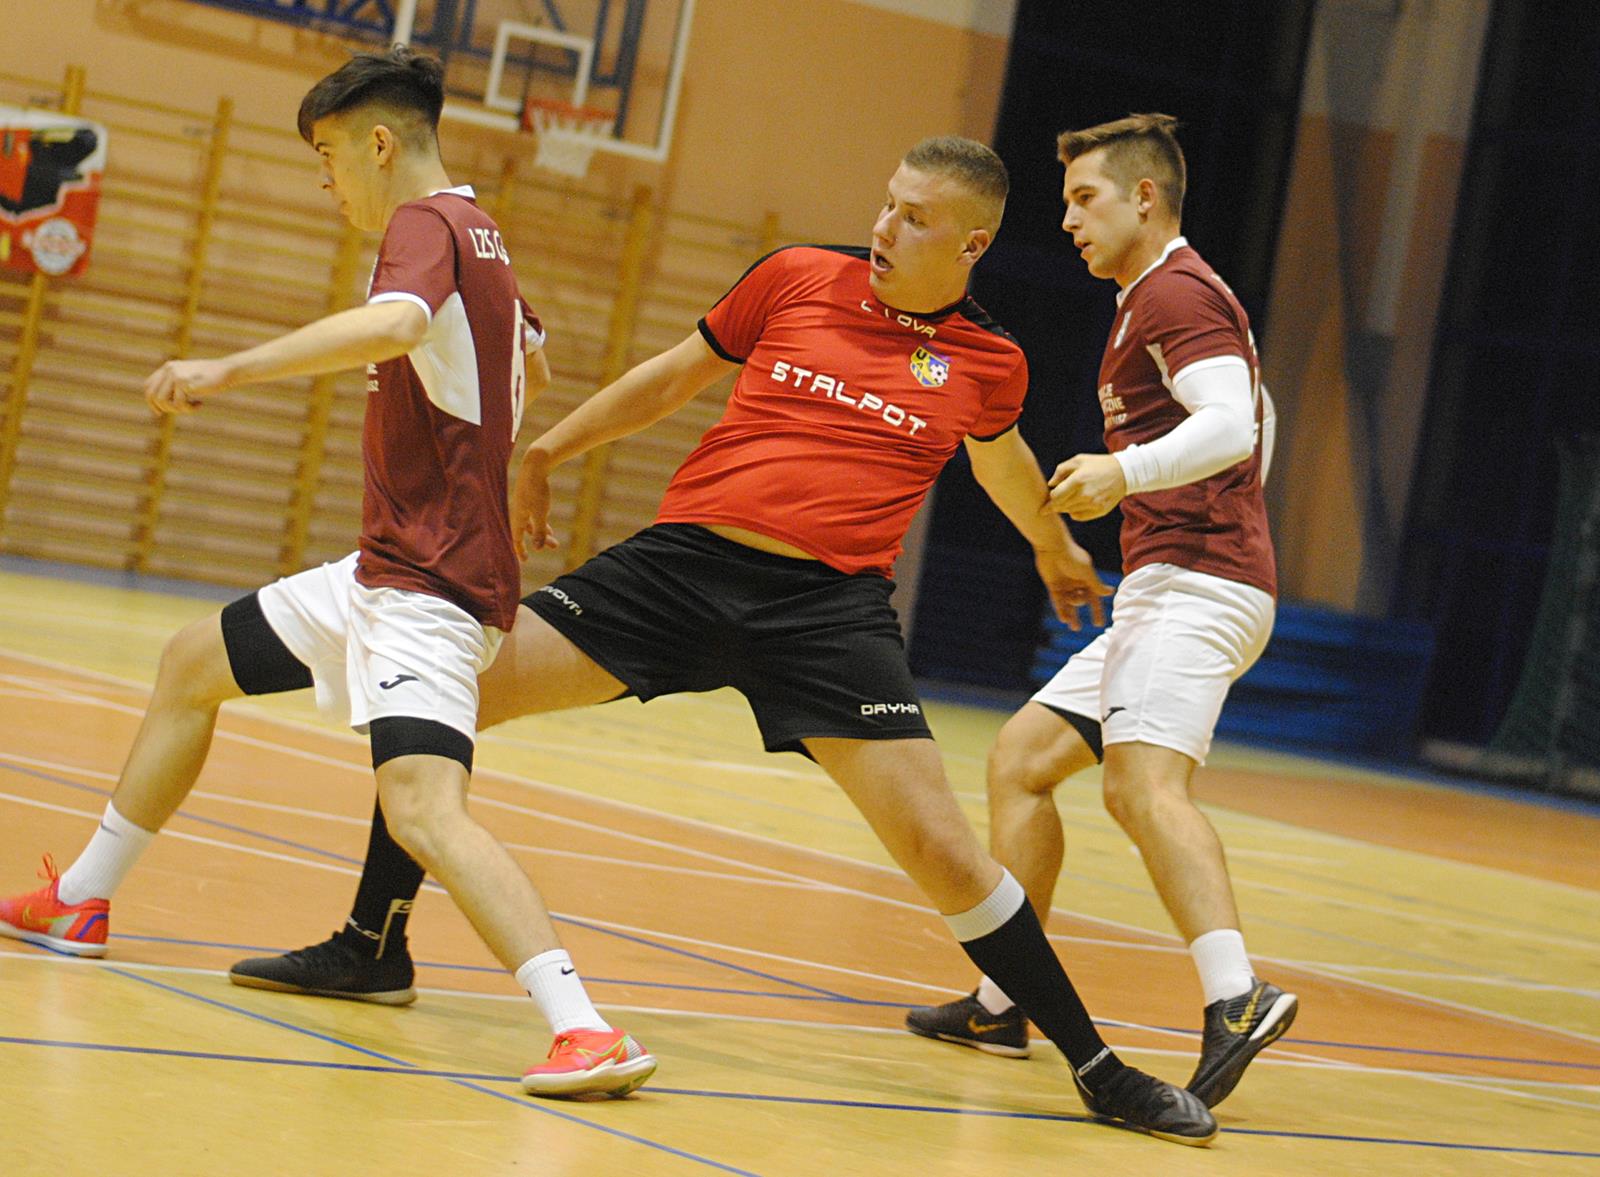 Futsal Liga Gołuchów. Stalpot Amatorzy wciąż na czele [ZDJĘCIA] - Zdjęcie główne